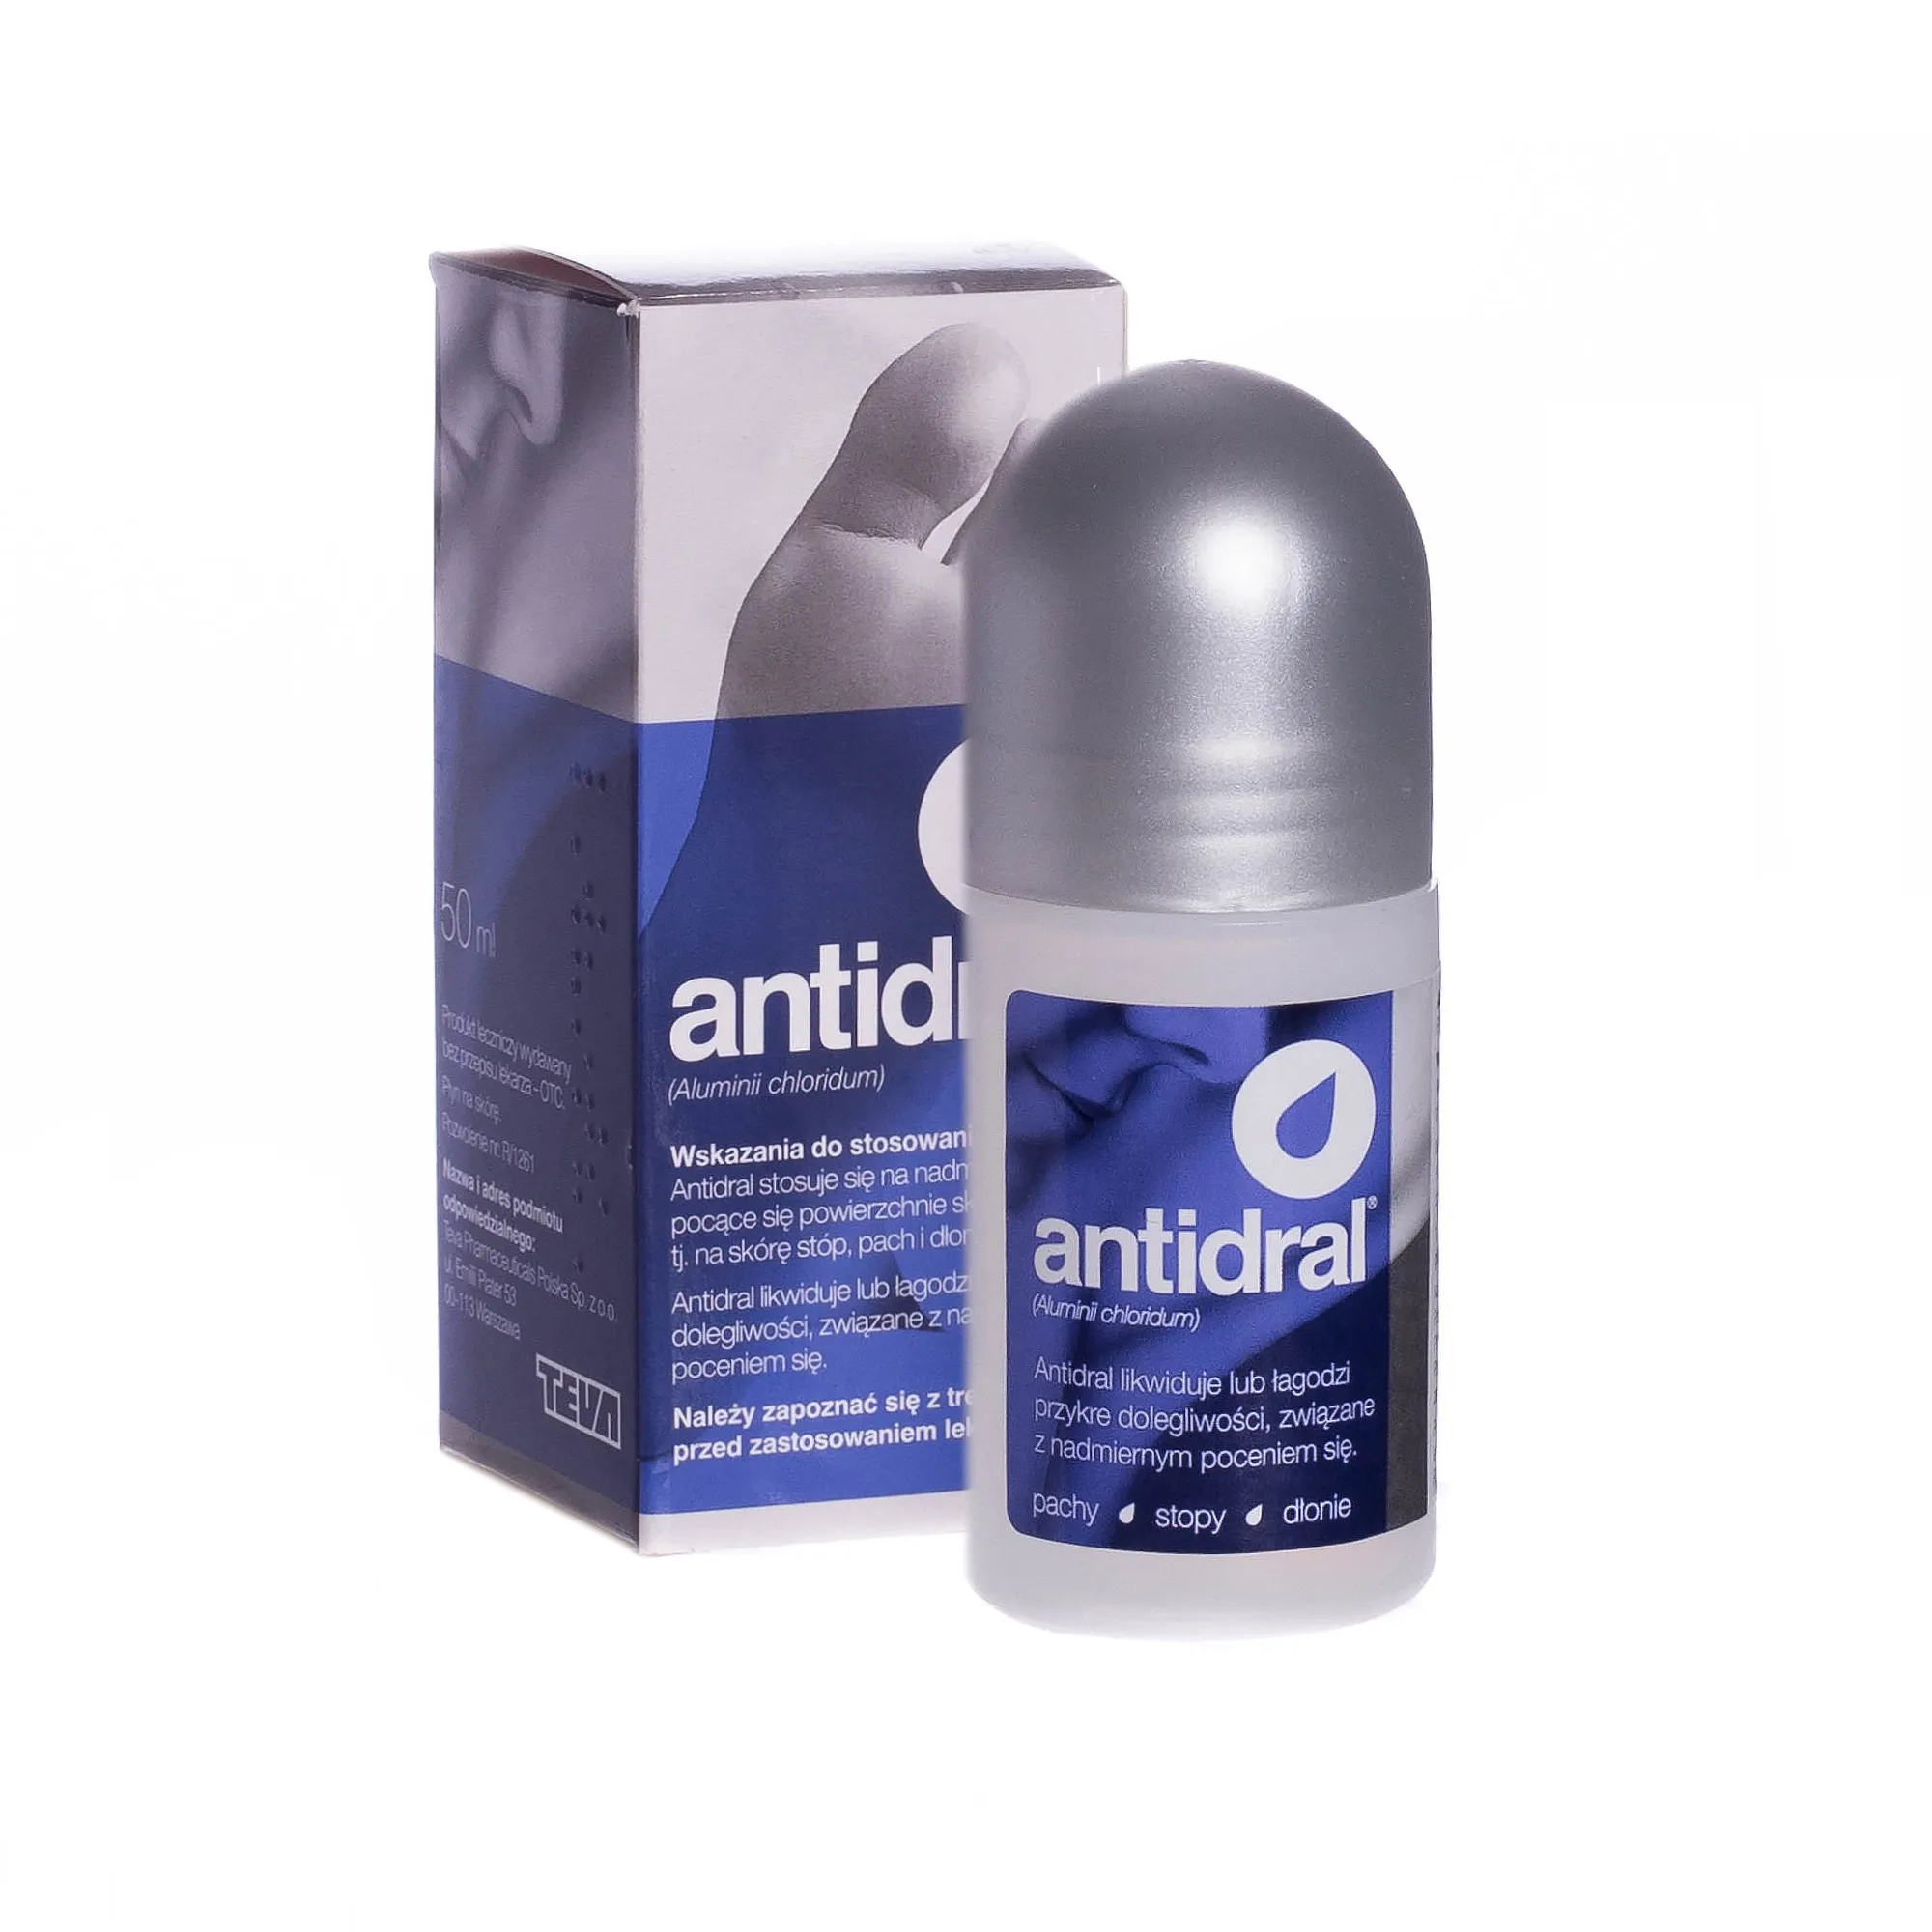 Antidral - lek do stosowania w przypadku nadmiernej potliwości skóry, 50 ml